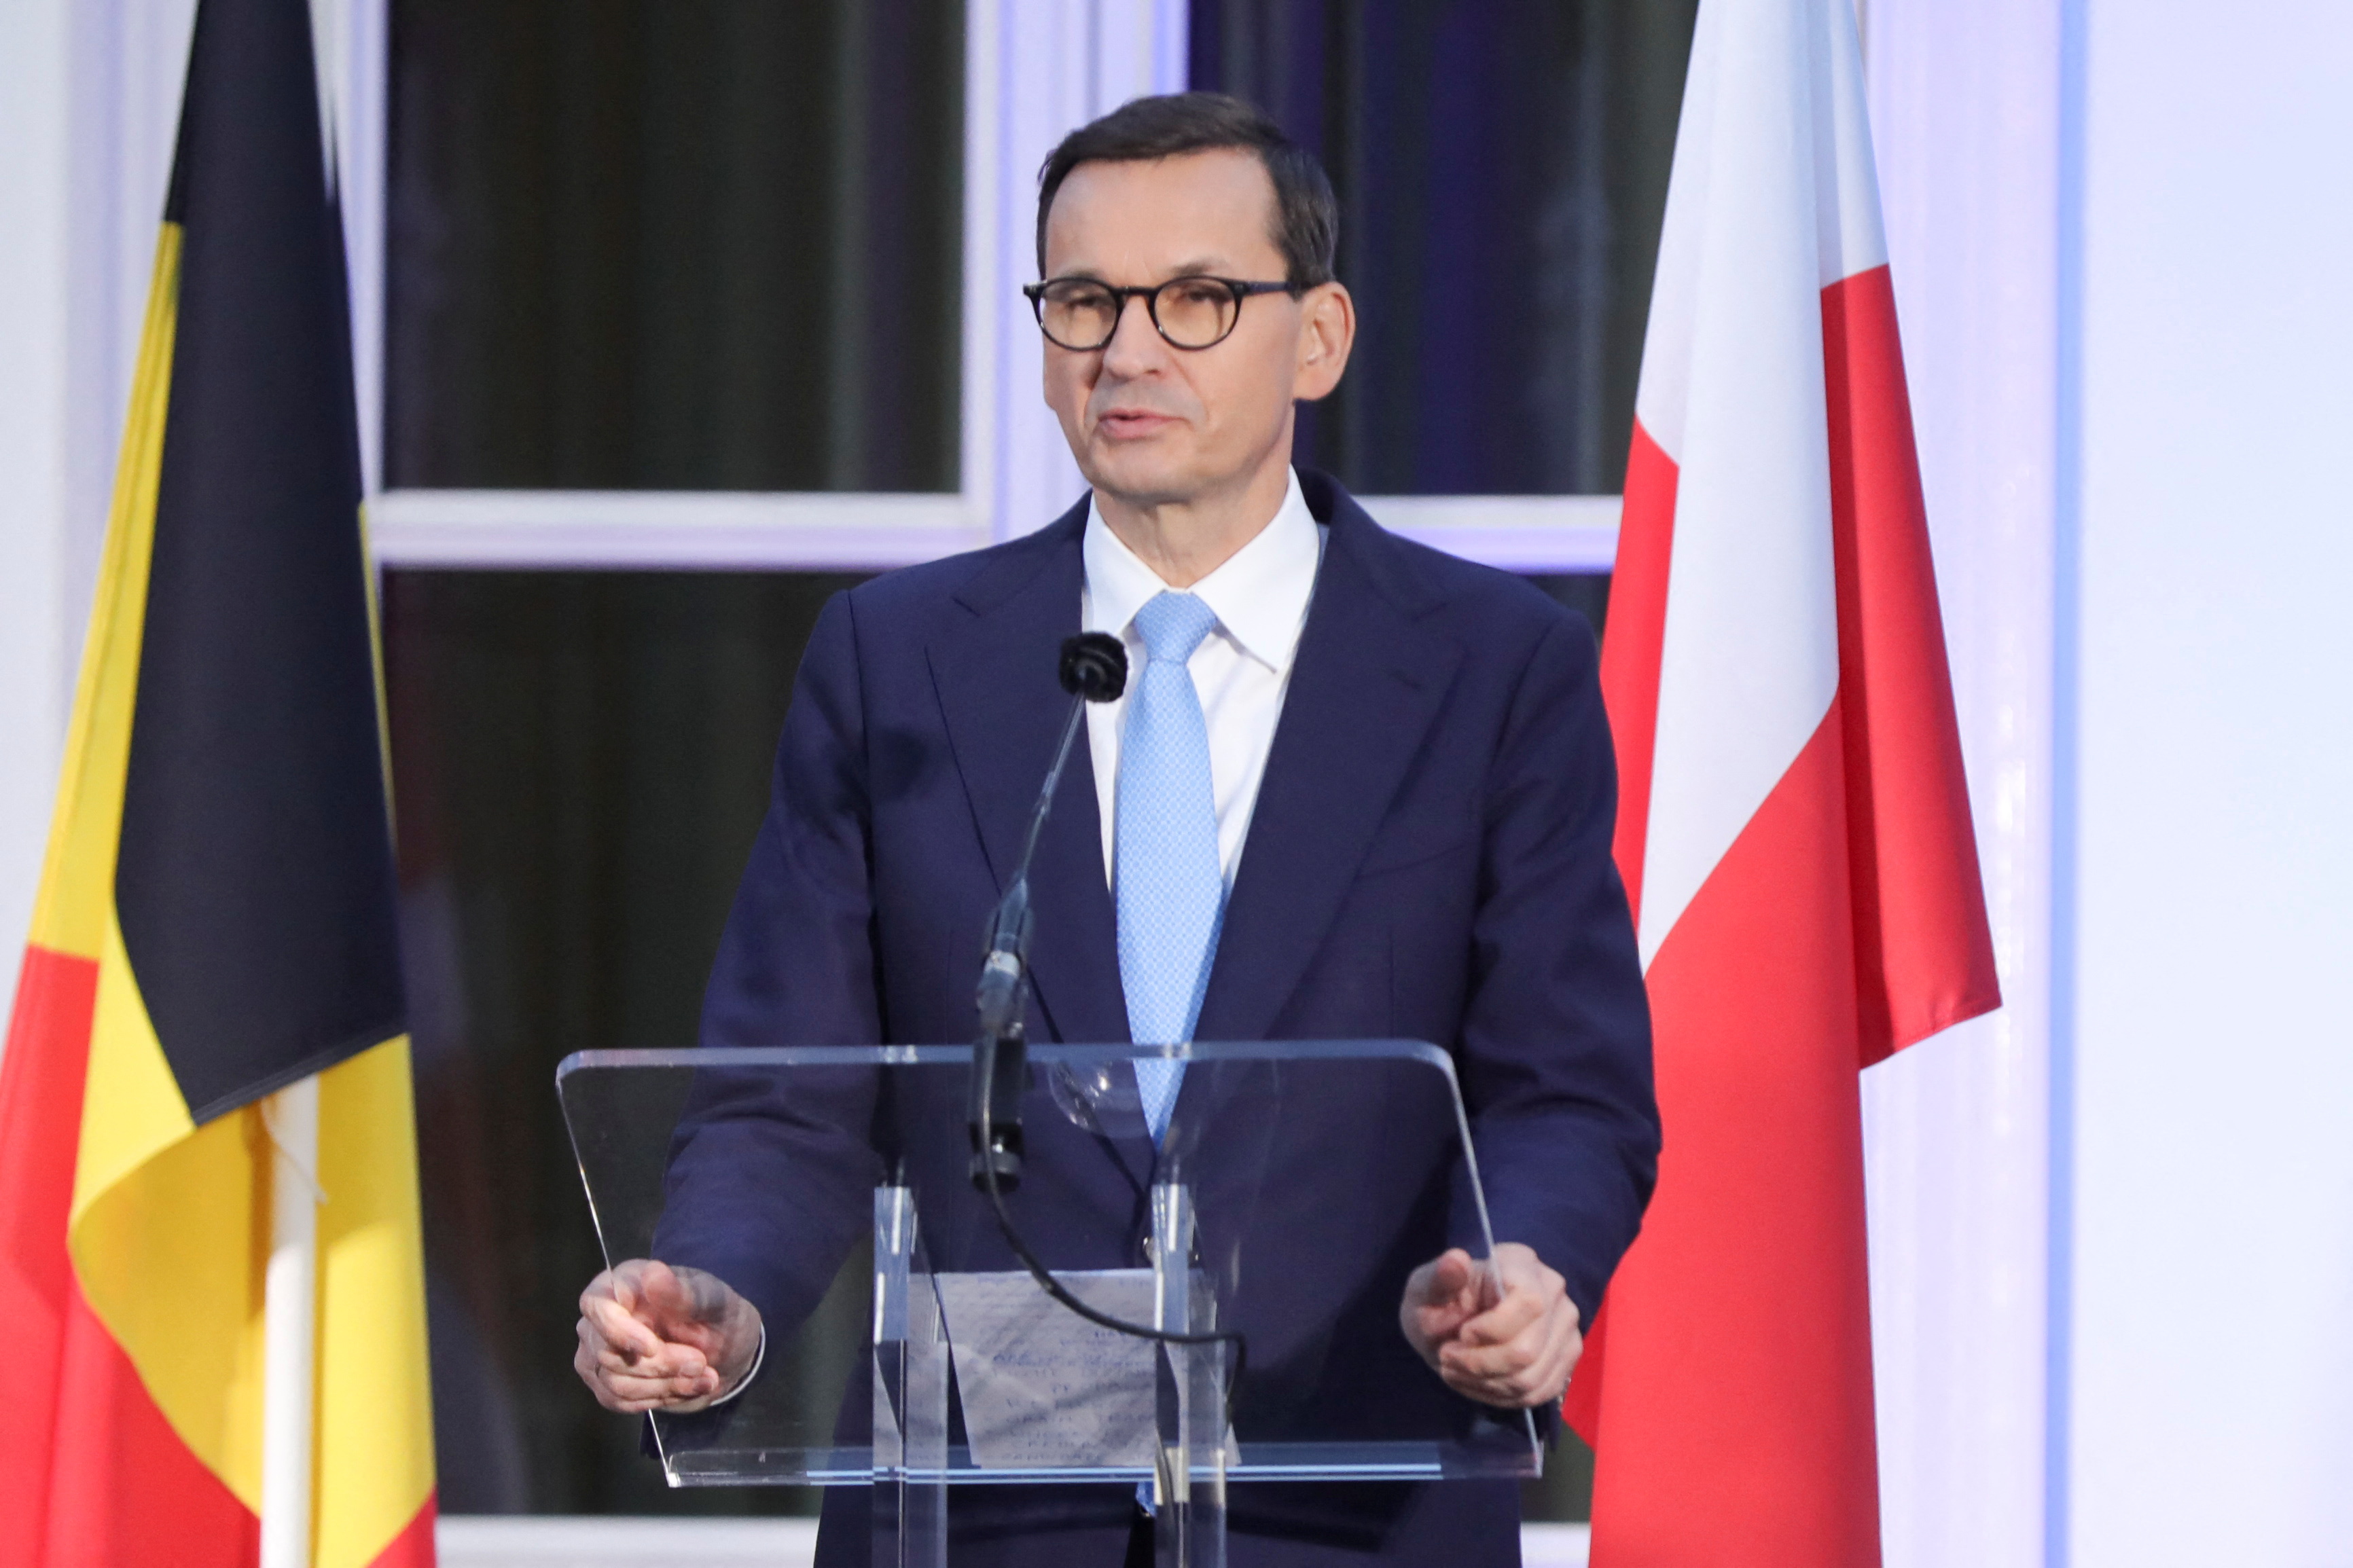 El primer ministro polaco, Mateusz Morawiecki, asiste a una rueda de prensa tras una reunión para preparar la próxima cumbre de la alianza en Madrid, en La Haya, Países Bajos, el 14 de junio de 2022. REUTERS/Eva Plevier

